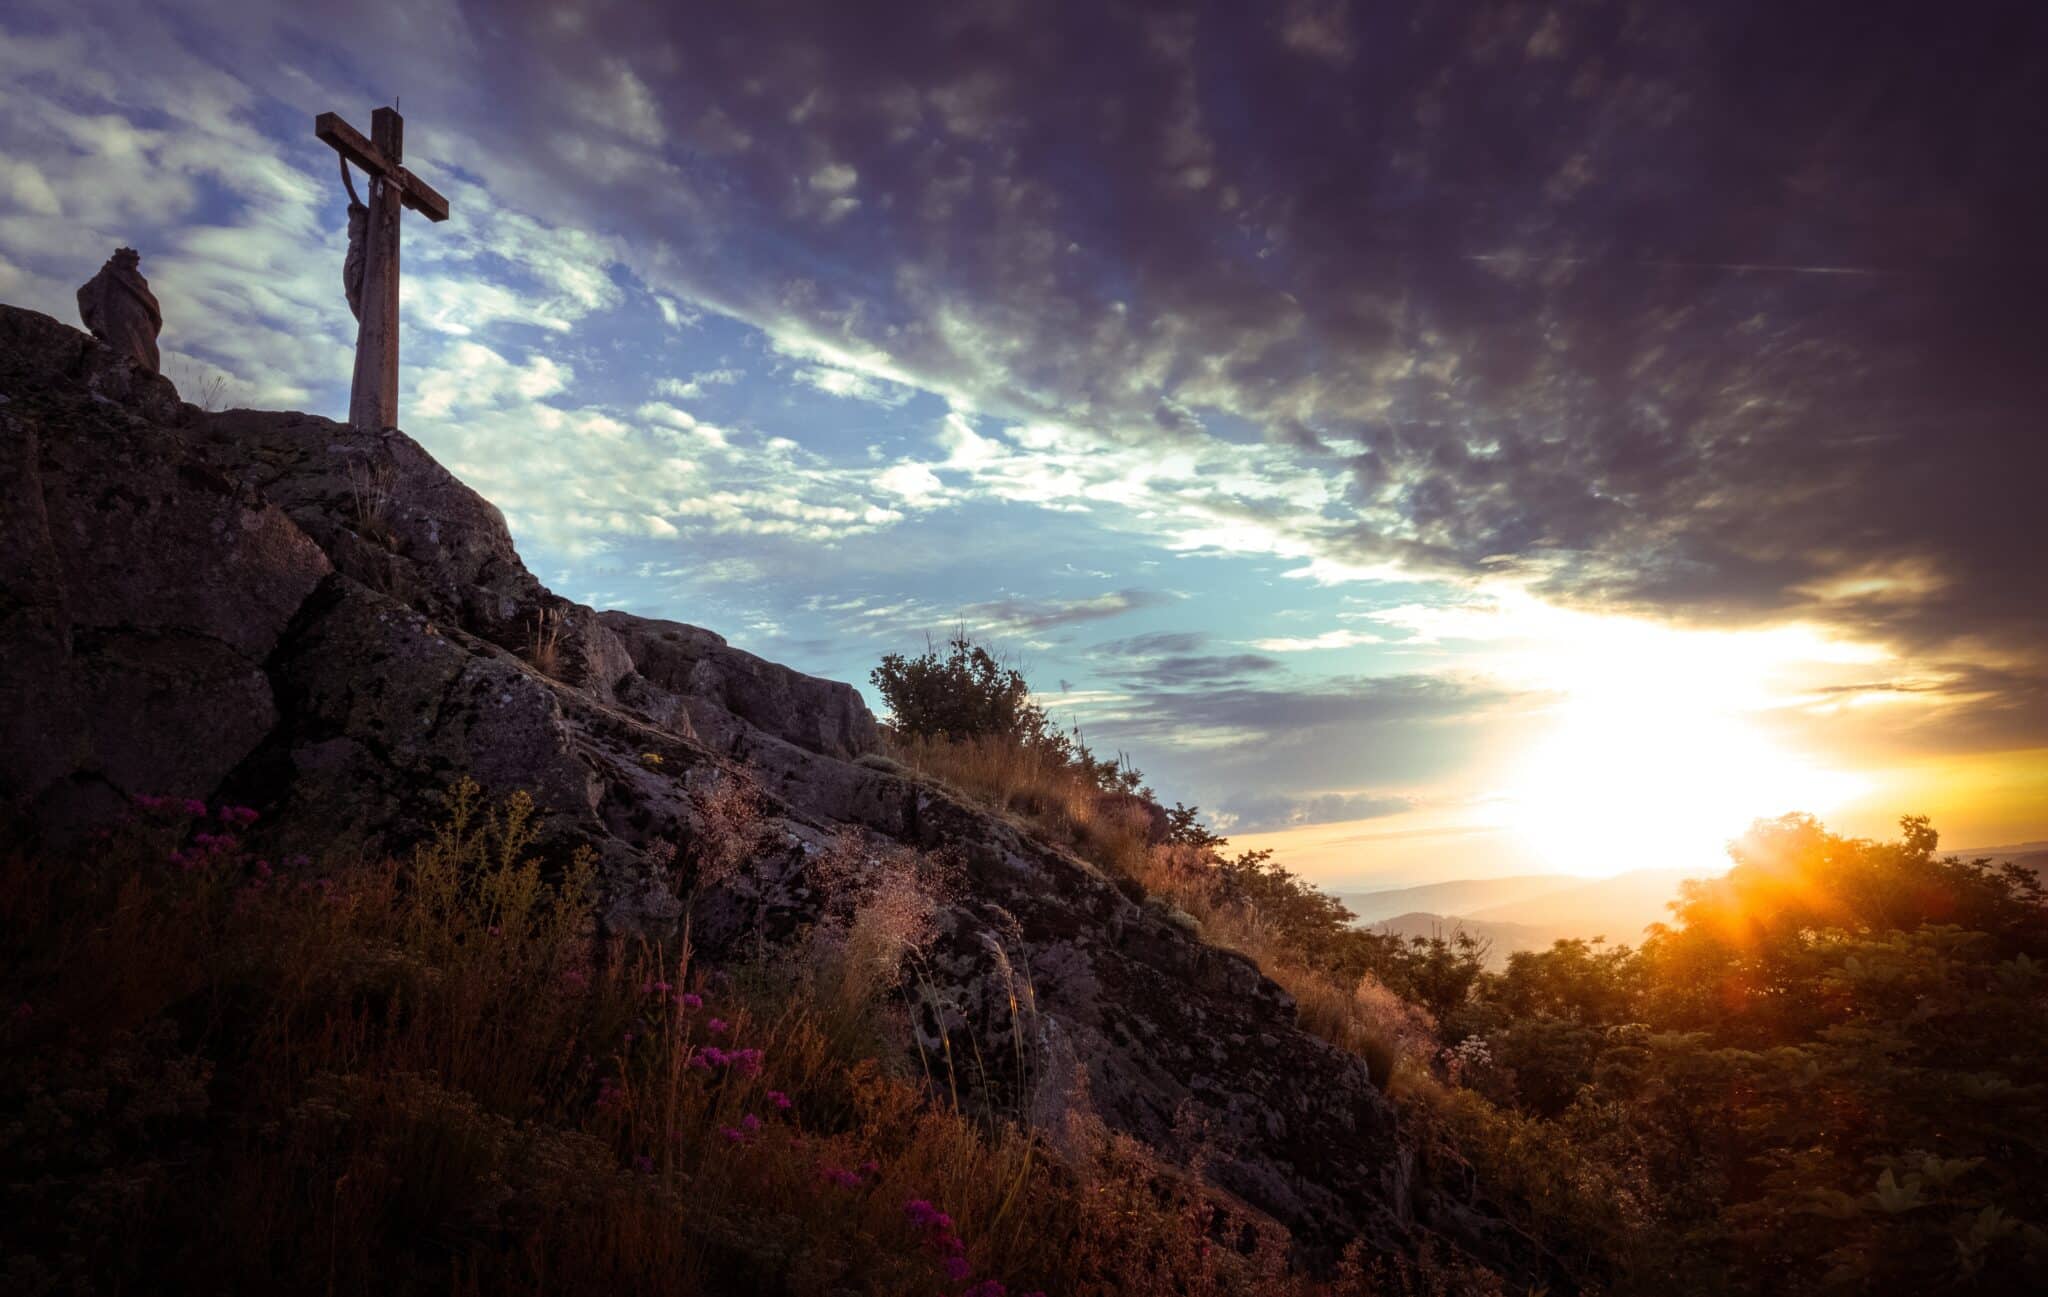 Cross on a mountaintop | Photo by Dimitri Kolpakov on Unsplash